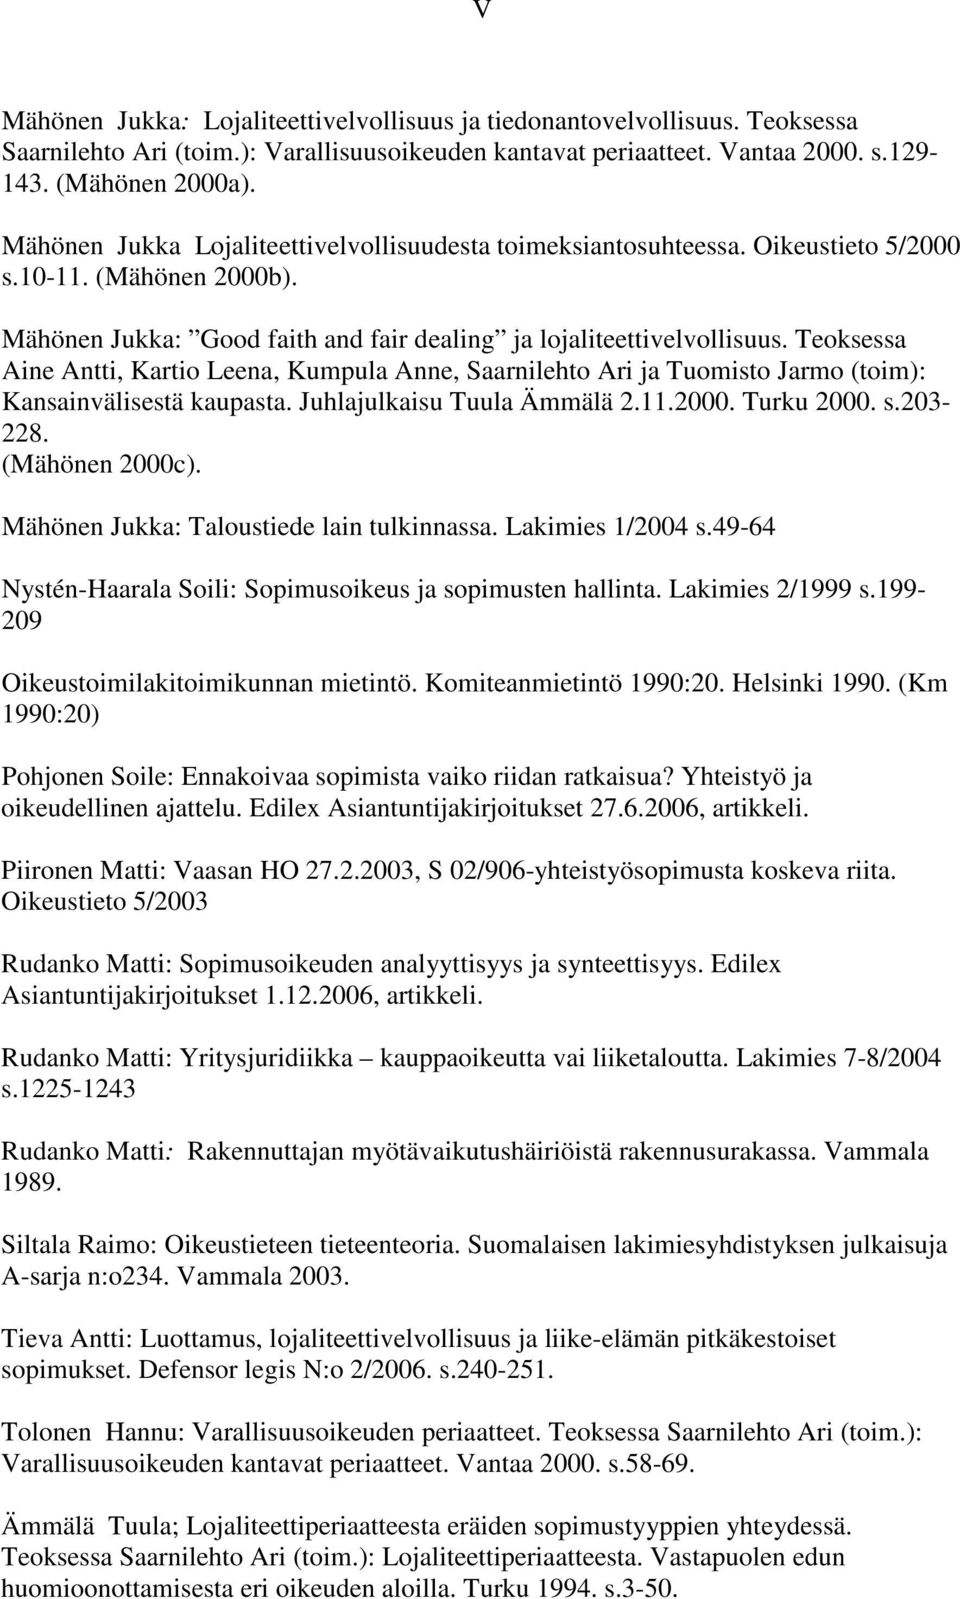 Teoksessa Aine Antti, Kartio Leena, Kumpula Anne, Saarnilehto Ari ja Tuomisto Jarmo (toim): Kansainvälisestä kaupasta. Juhlajulkaisu Tuula Ämmälä 2.11.2000. Turku 2000. s.203-228. (Mähönen 2000c).